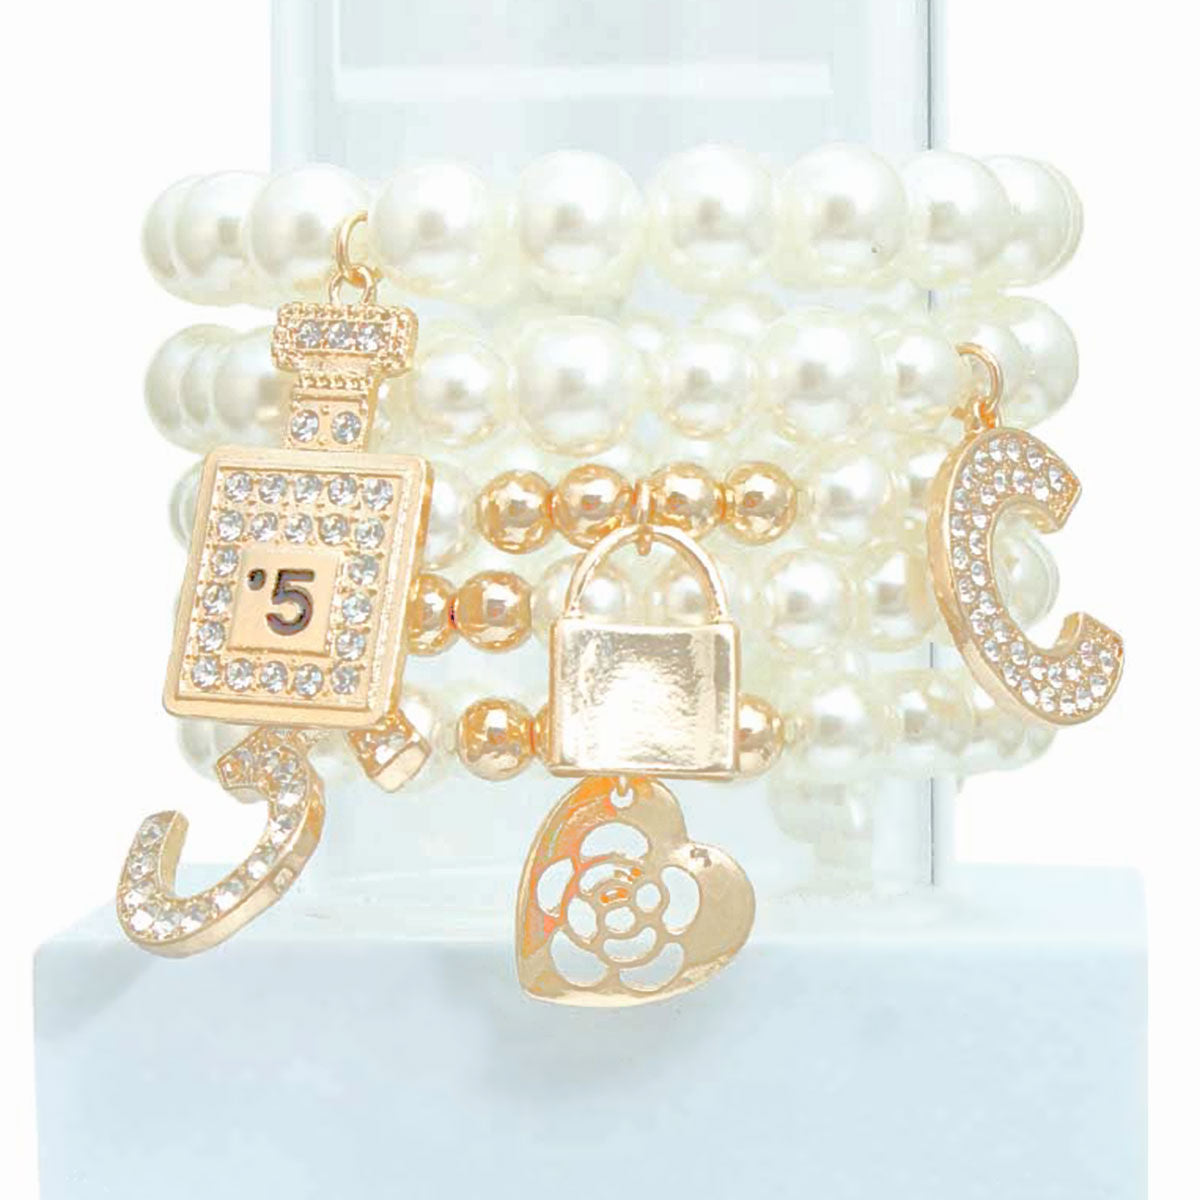 Cream Pearl No. 5 Boutique Charm Bracelets